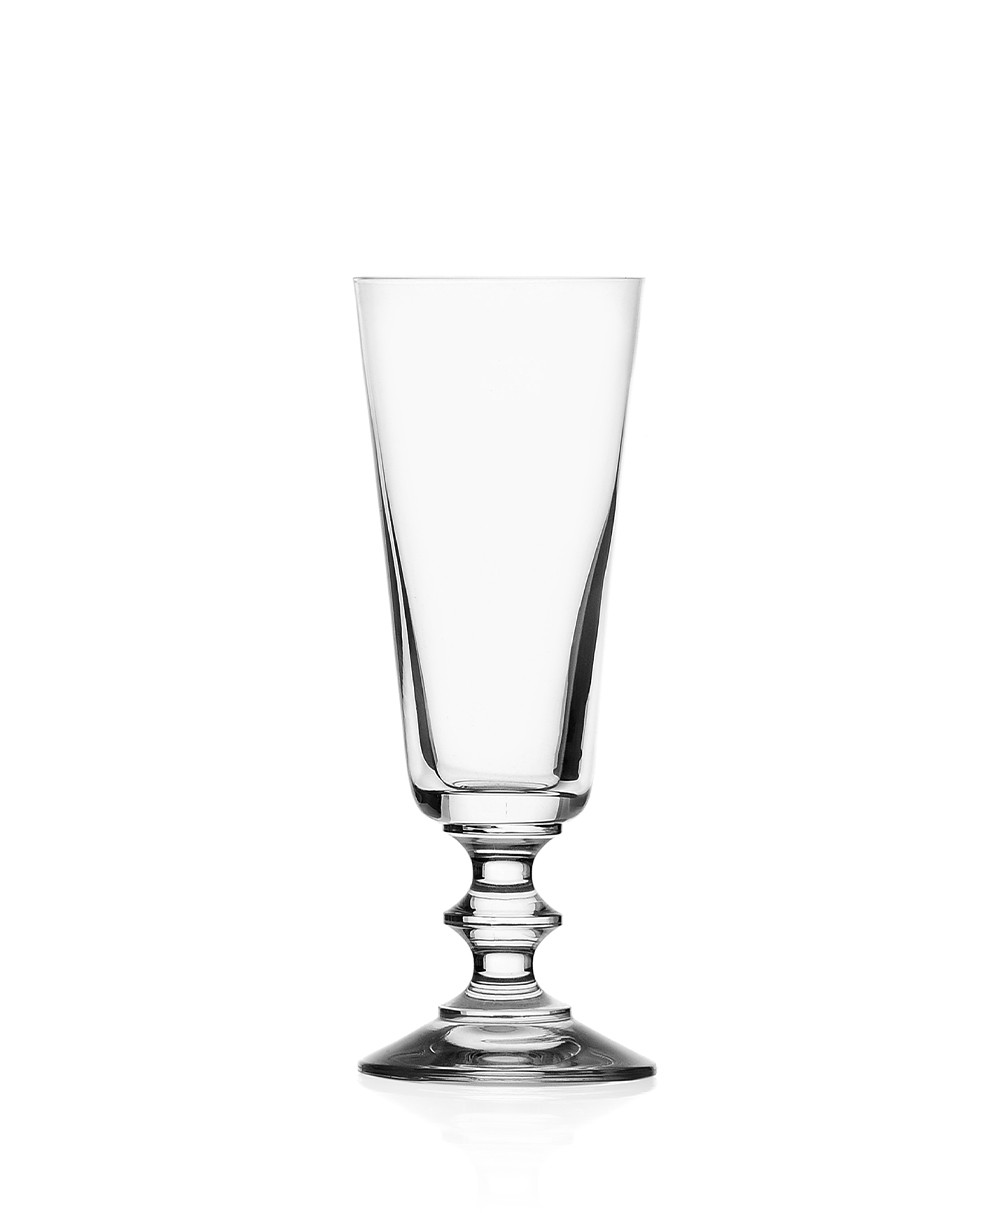 Produktbild "Parigi Flute Glas" des Herstellers Ichendorf Milano im RAUM Conceptstore